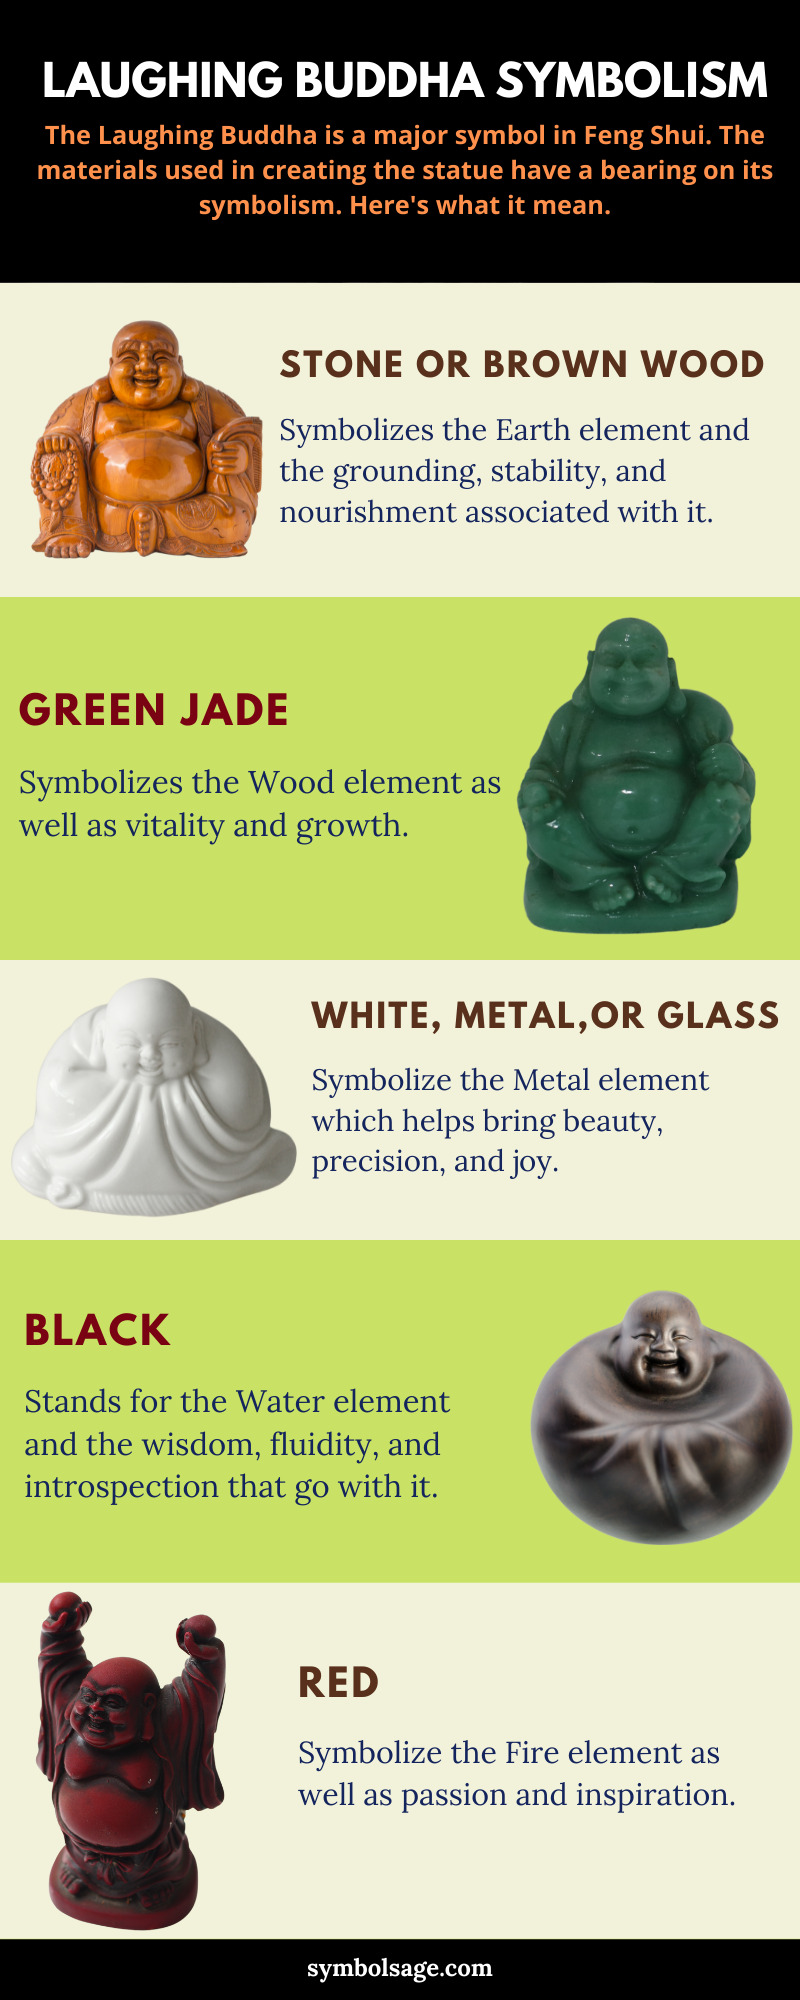 El significado de los diferentes materiales de Laughing Buddha